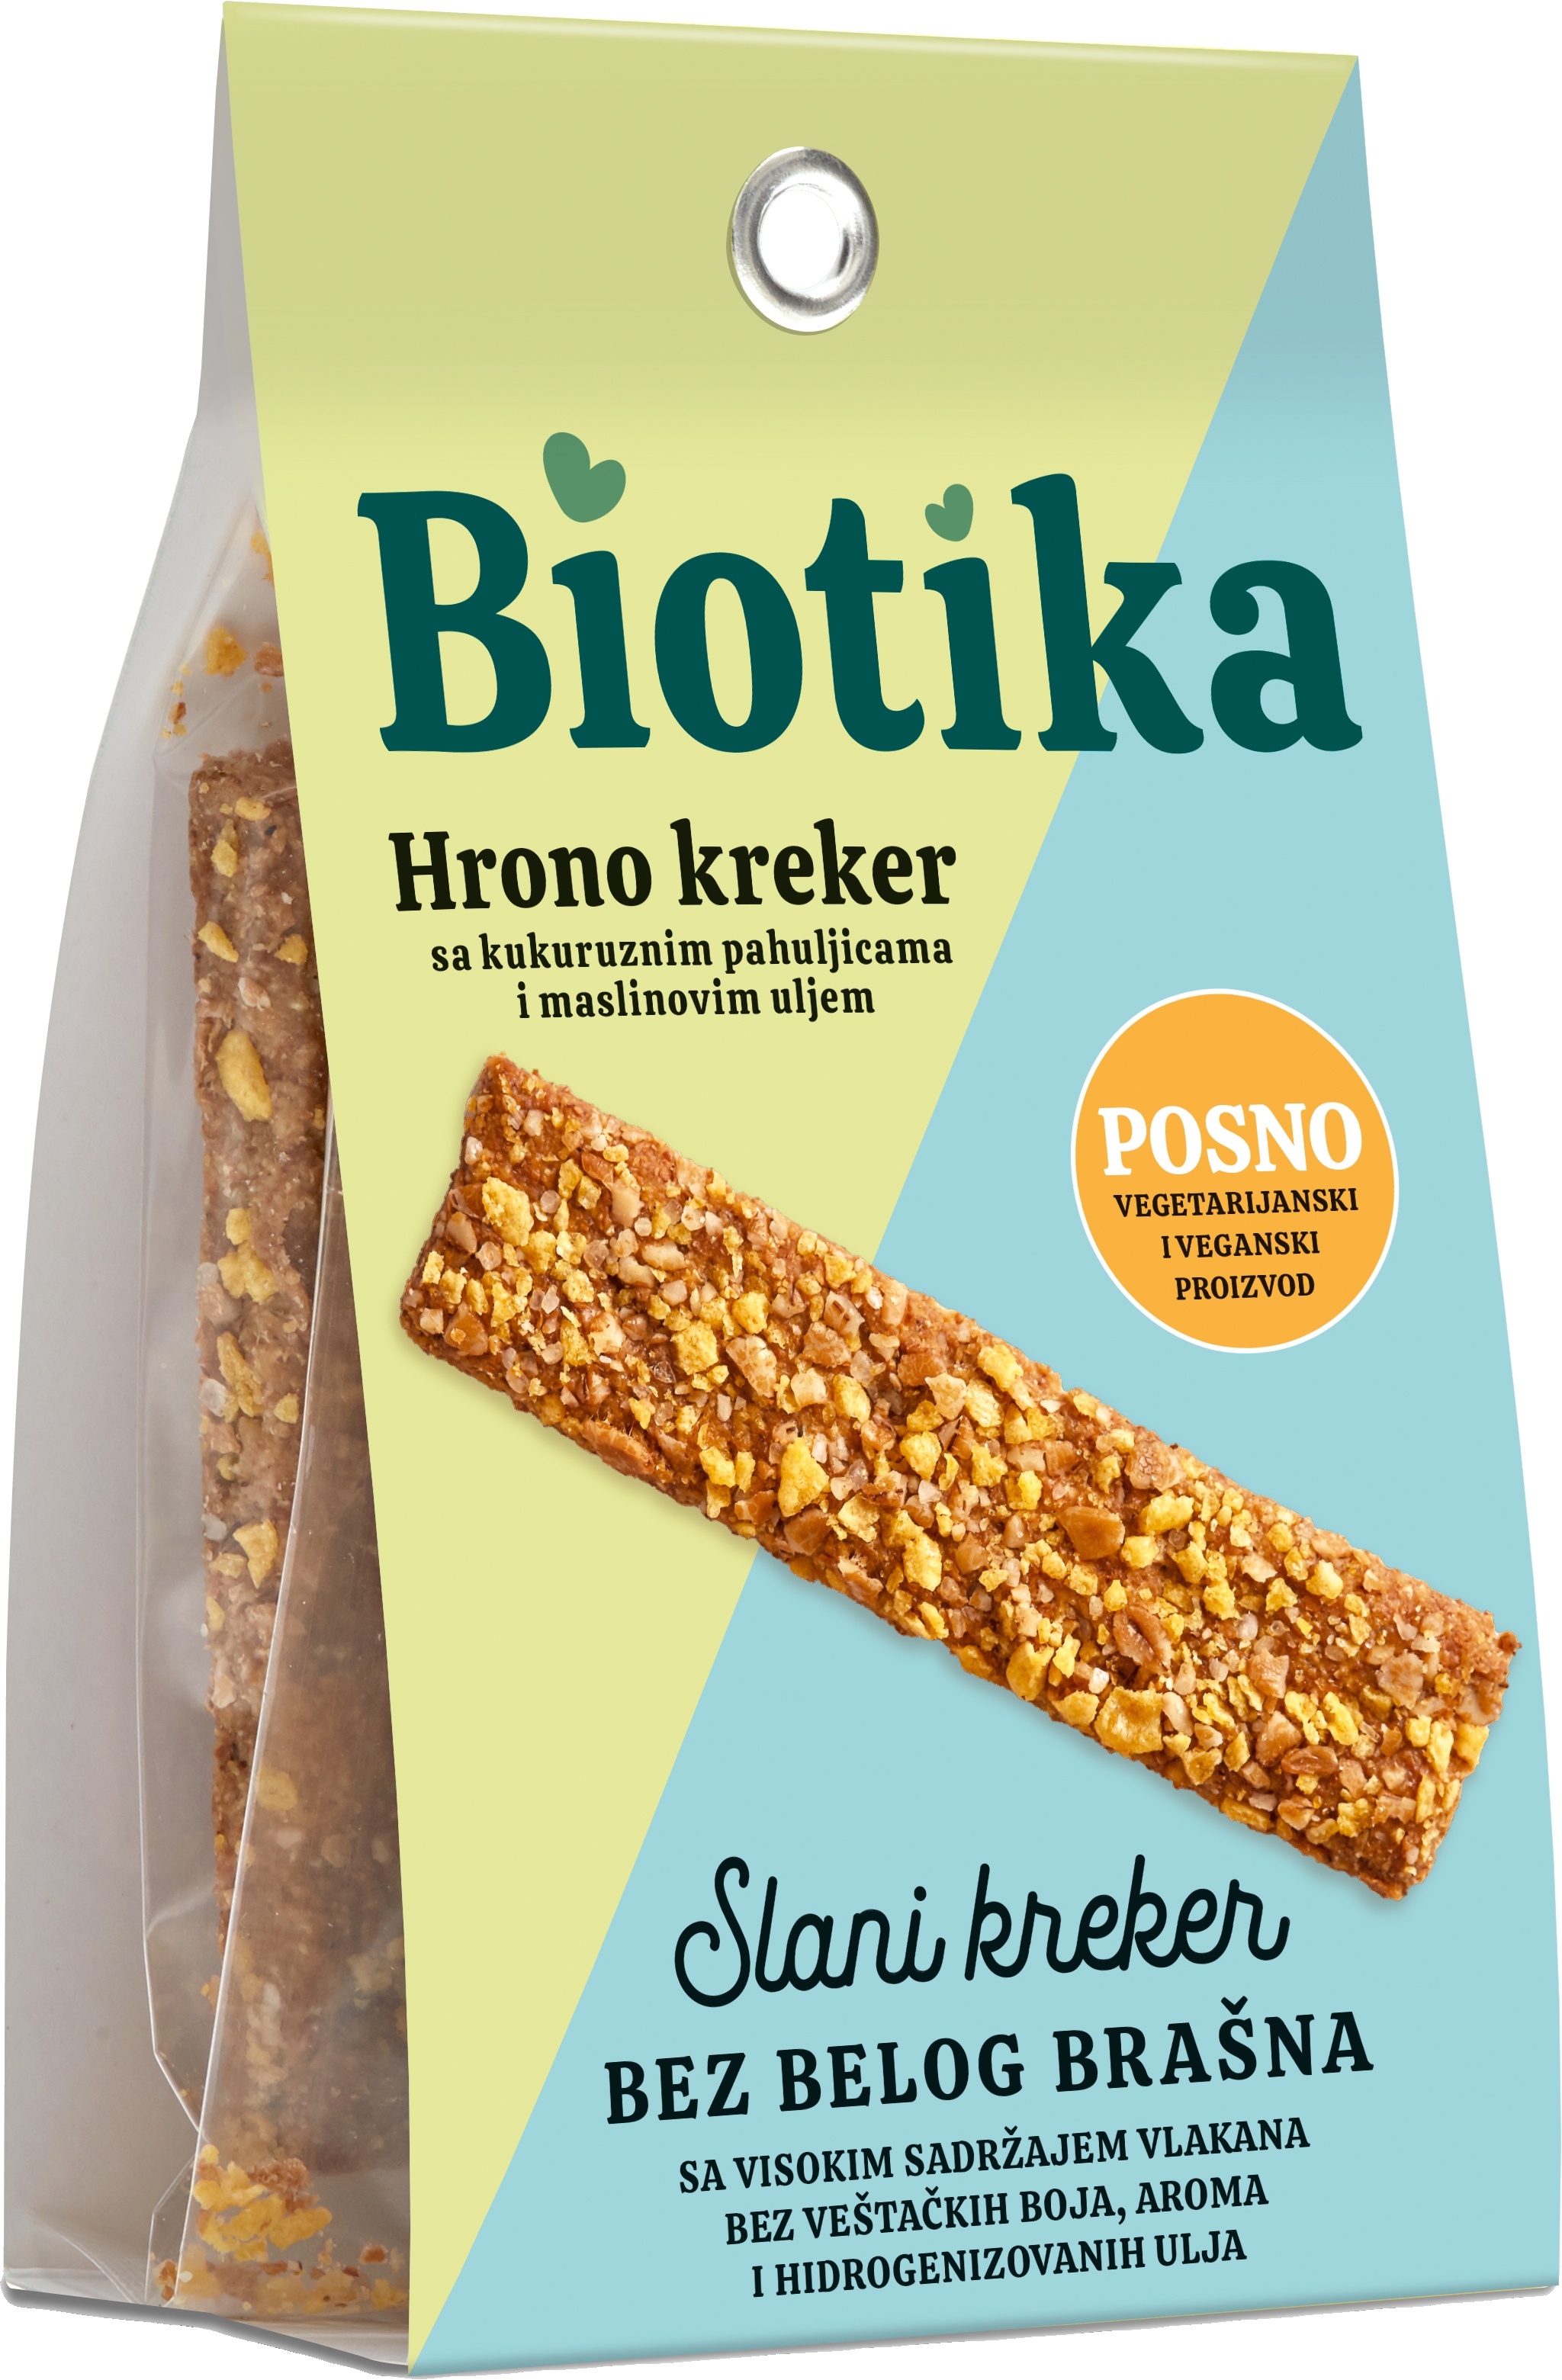 Slika za Hrono kreker sa maslinovim uljem Biotika 100g